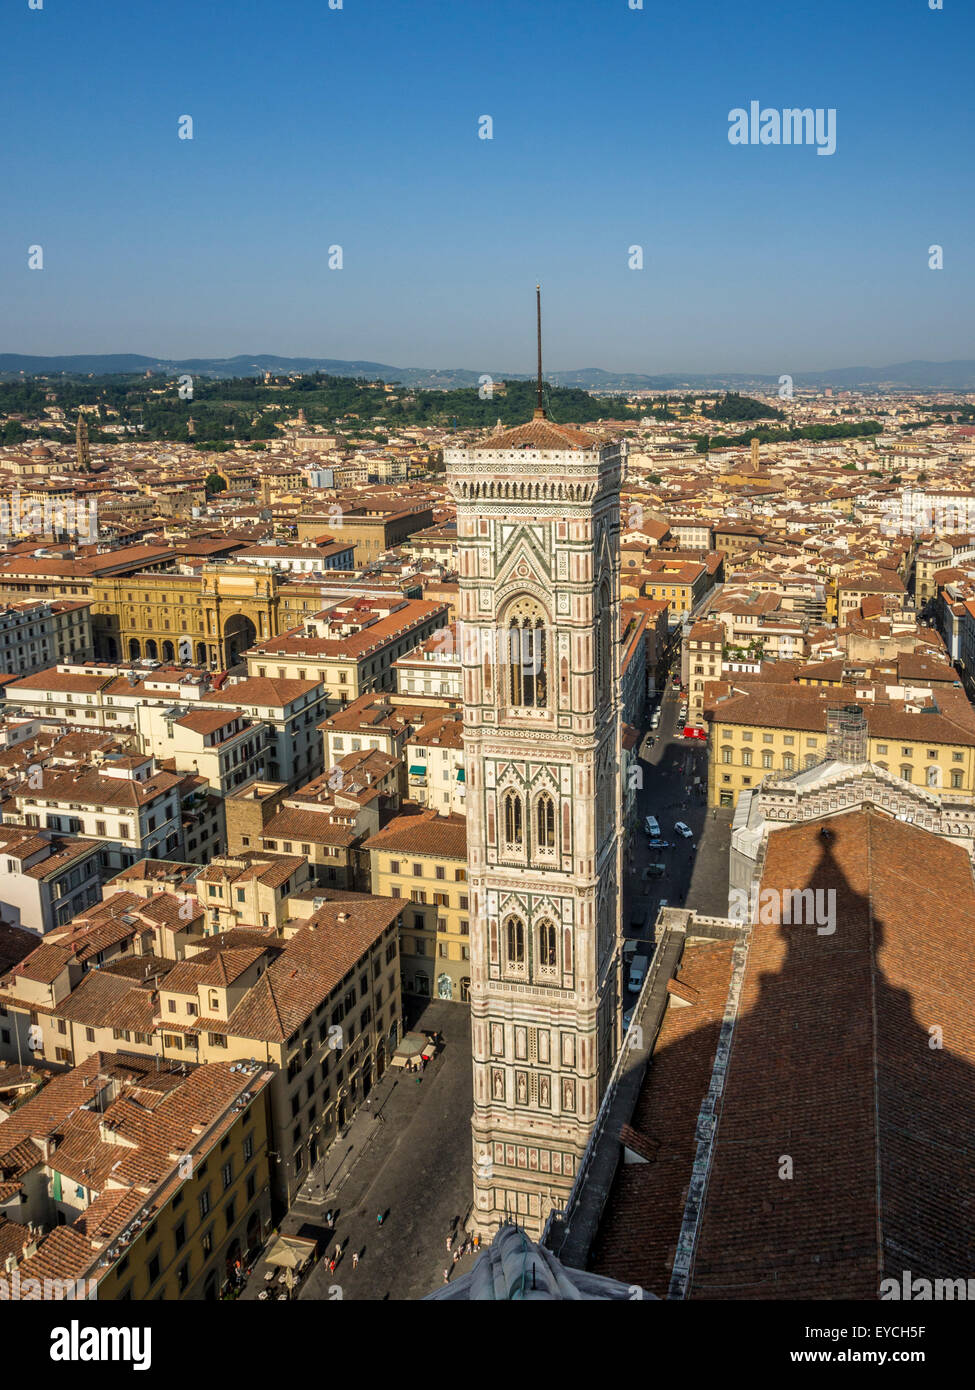 Giottos Campanile oder Glockenturm, Teil der Kathedrale von Florenz oder des duomo. Florenz. Italien. Stockfoto